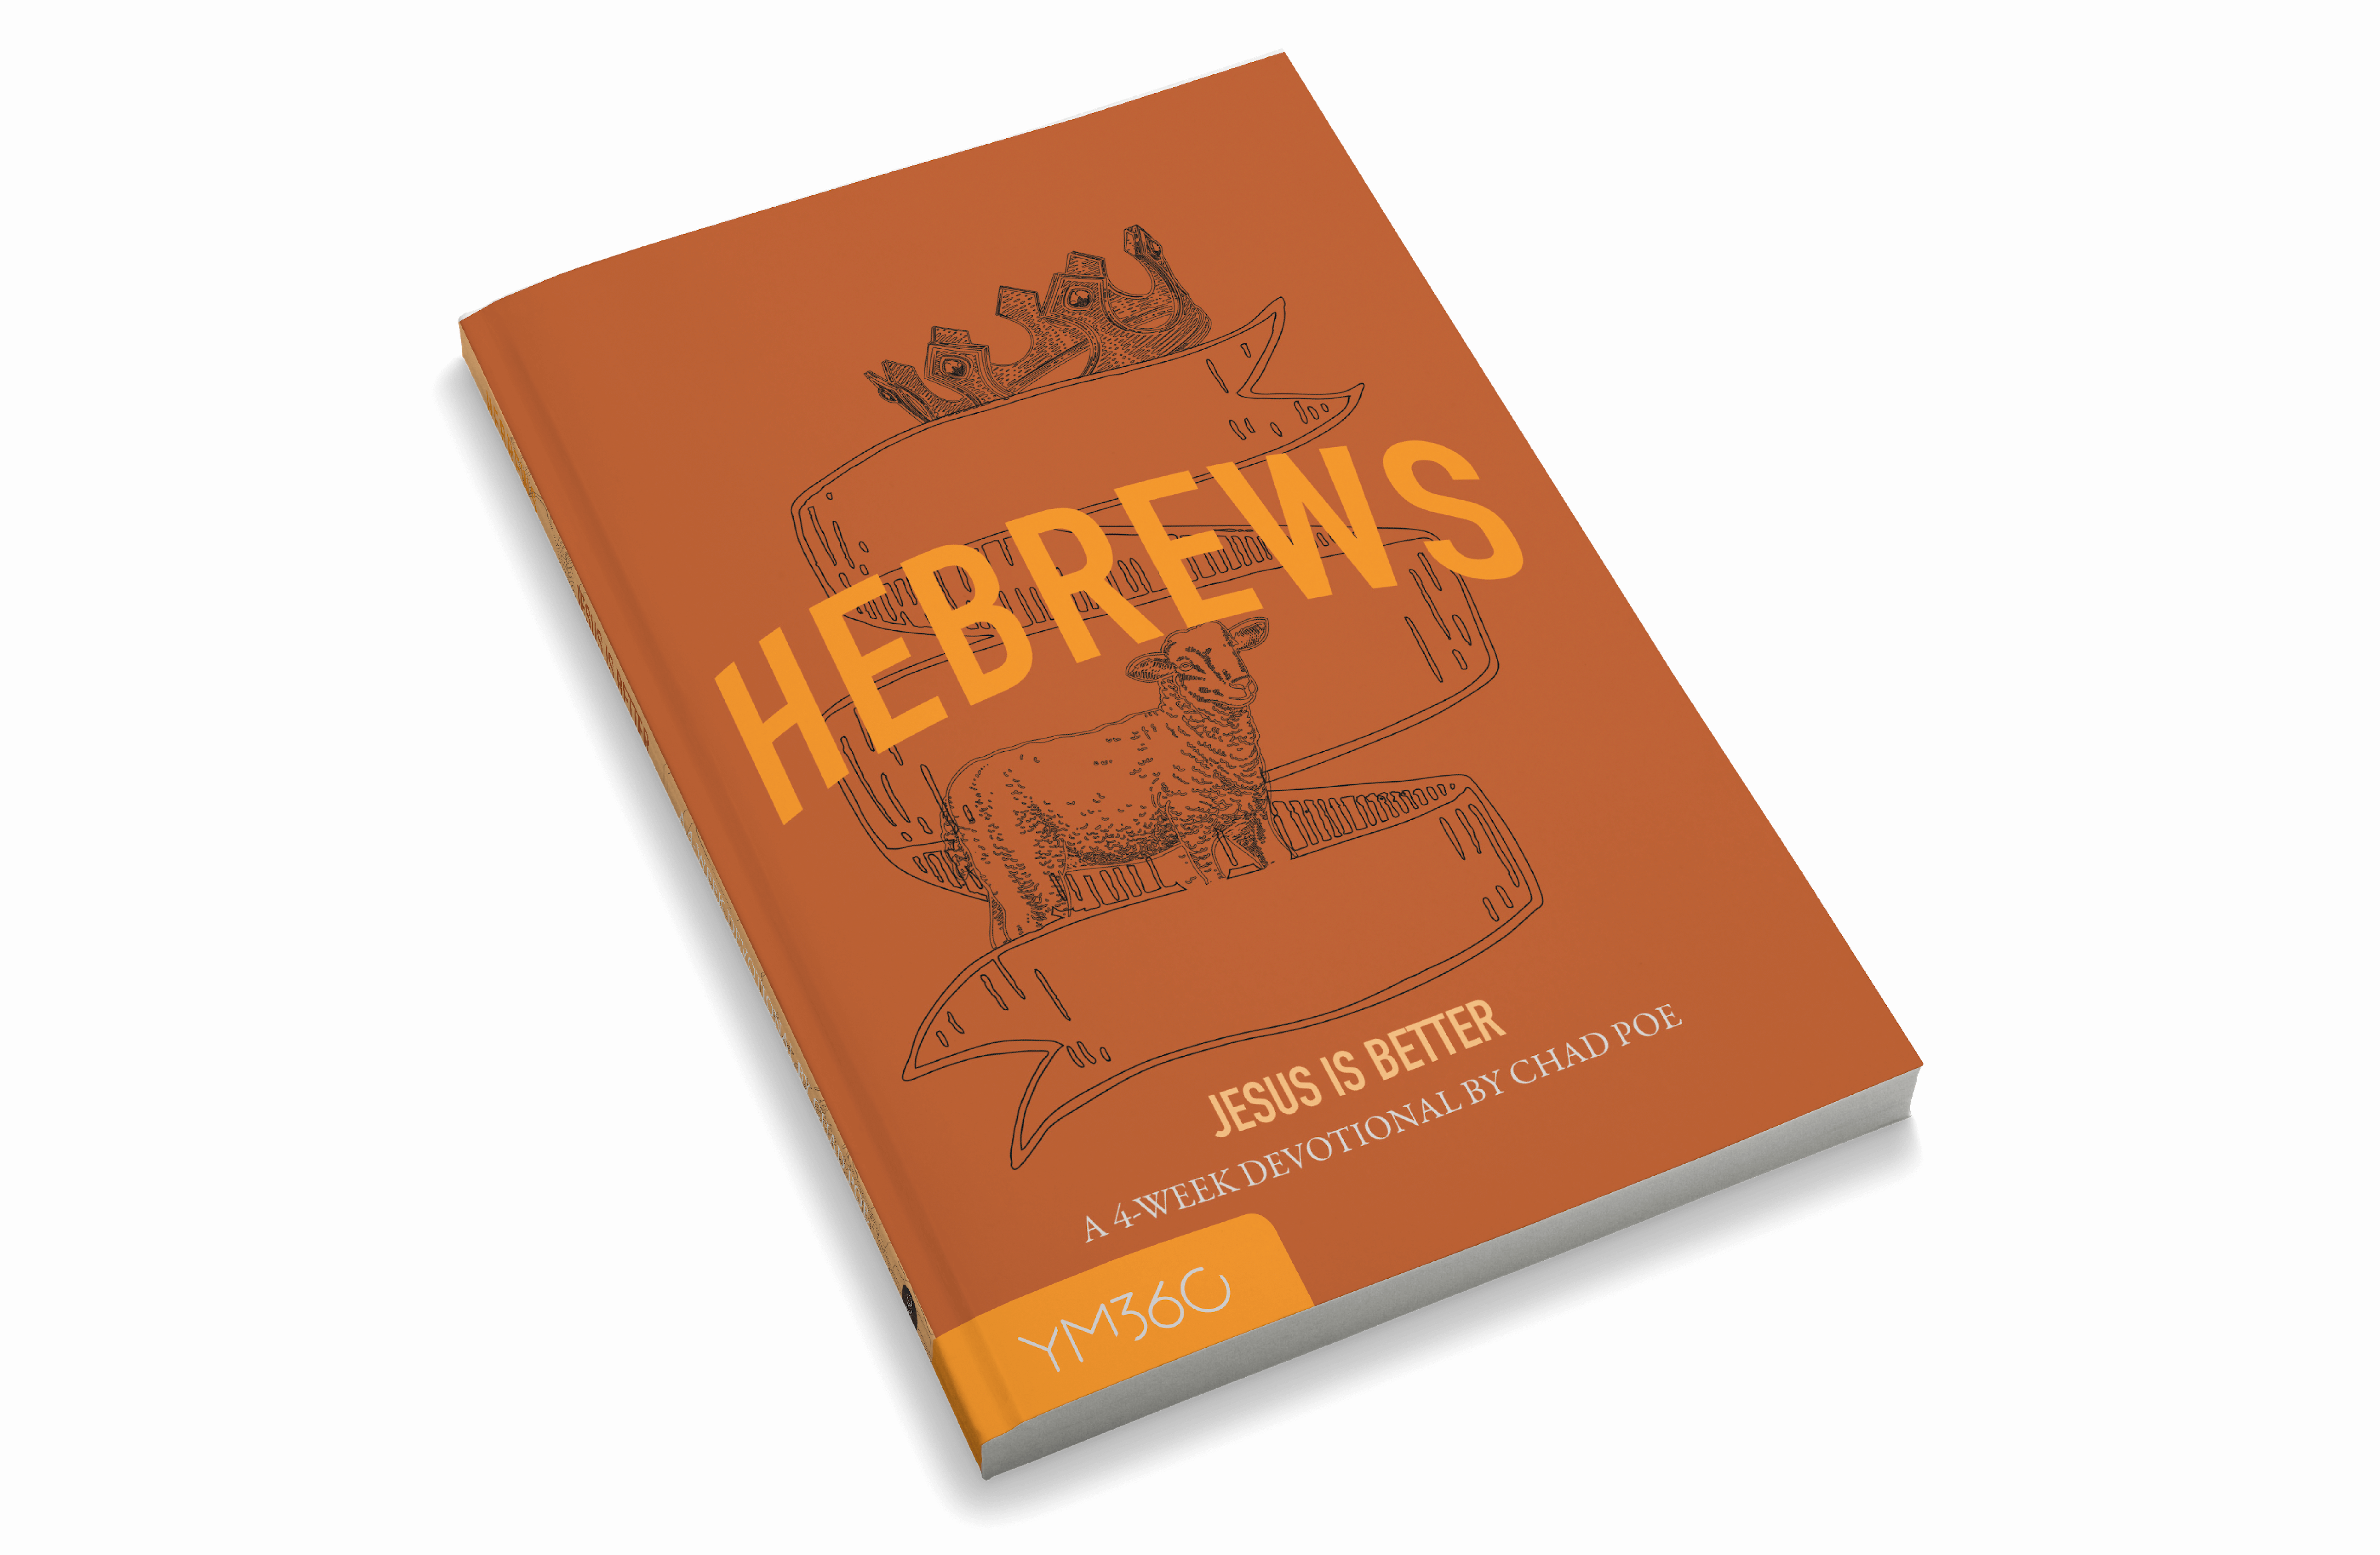 Hebrews: Jesus Is Better